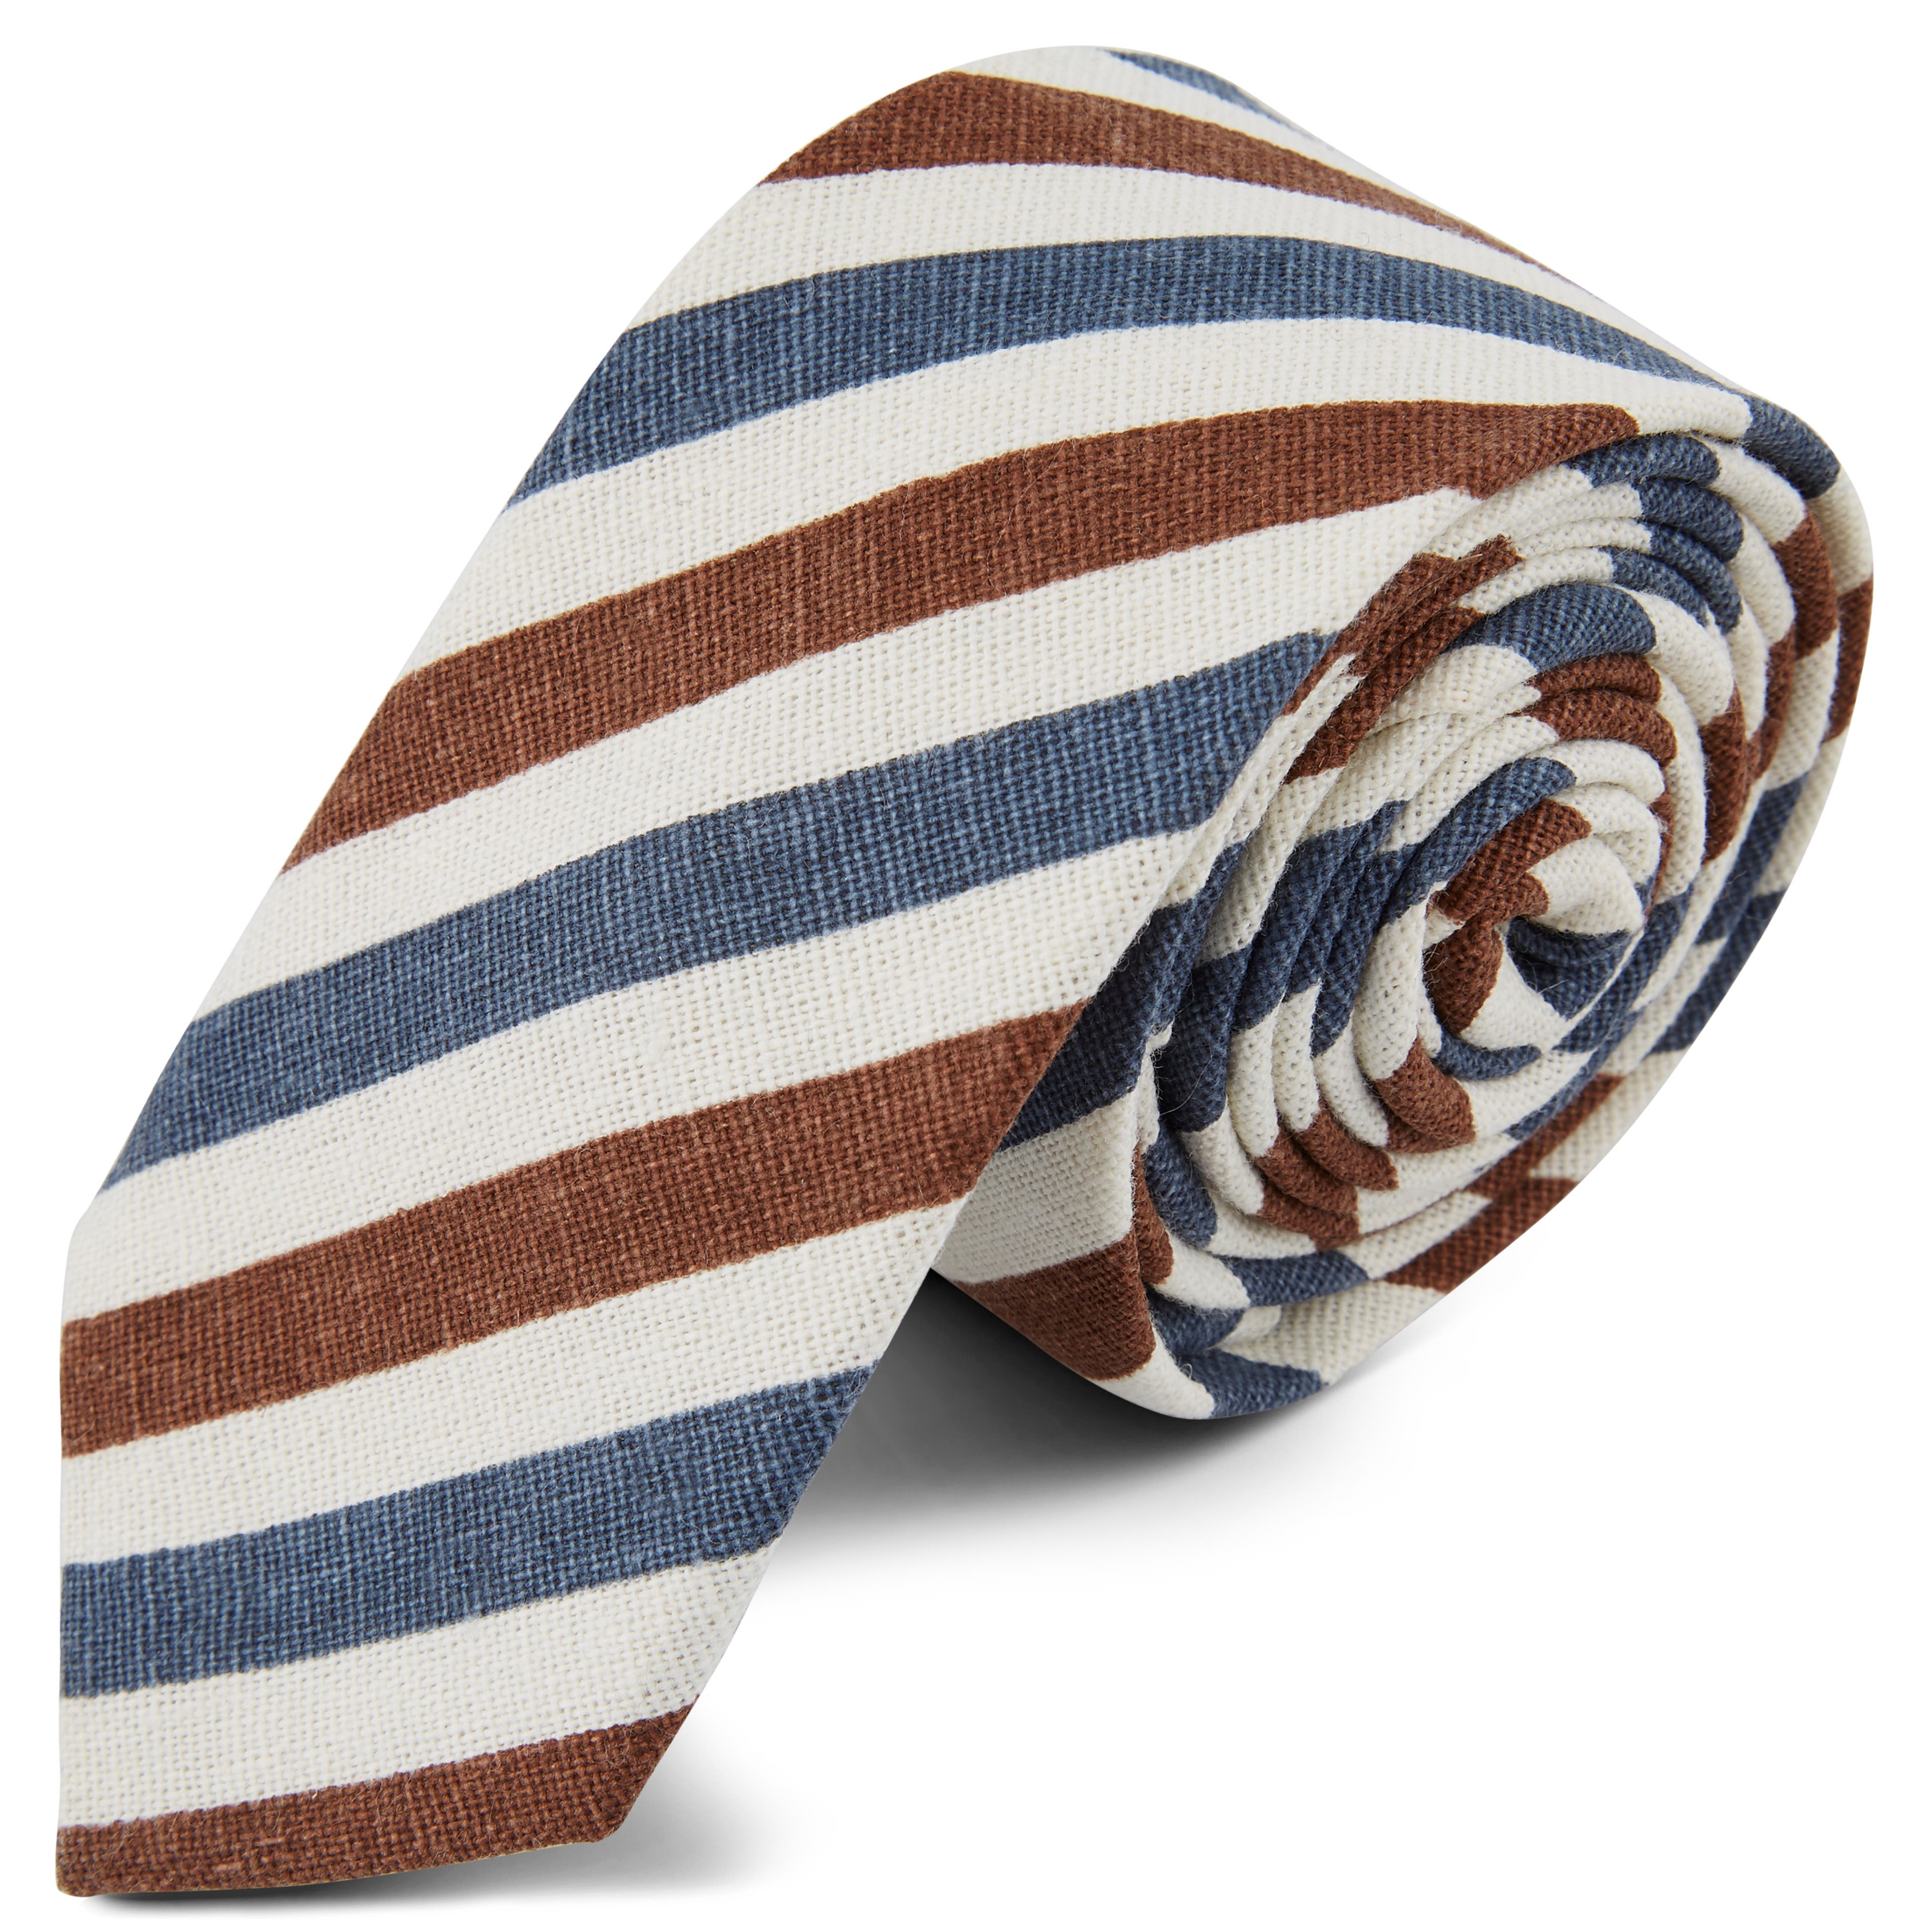 Pásikavá kravata v modro-hnedej farbe